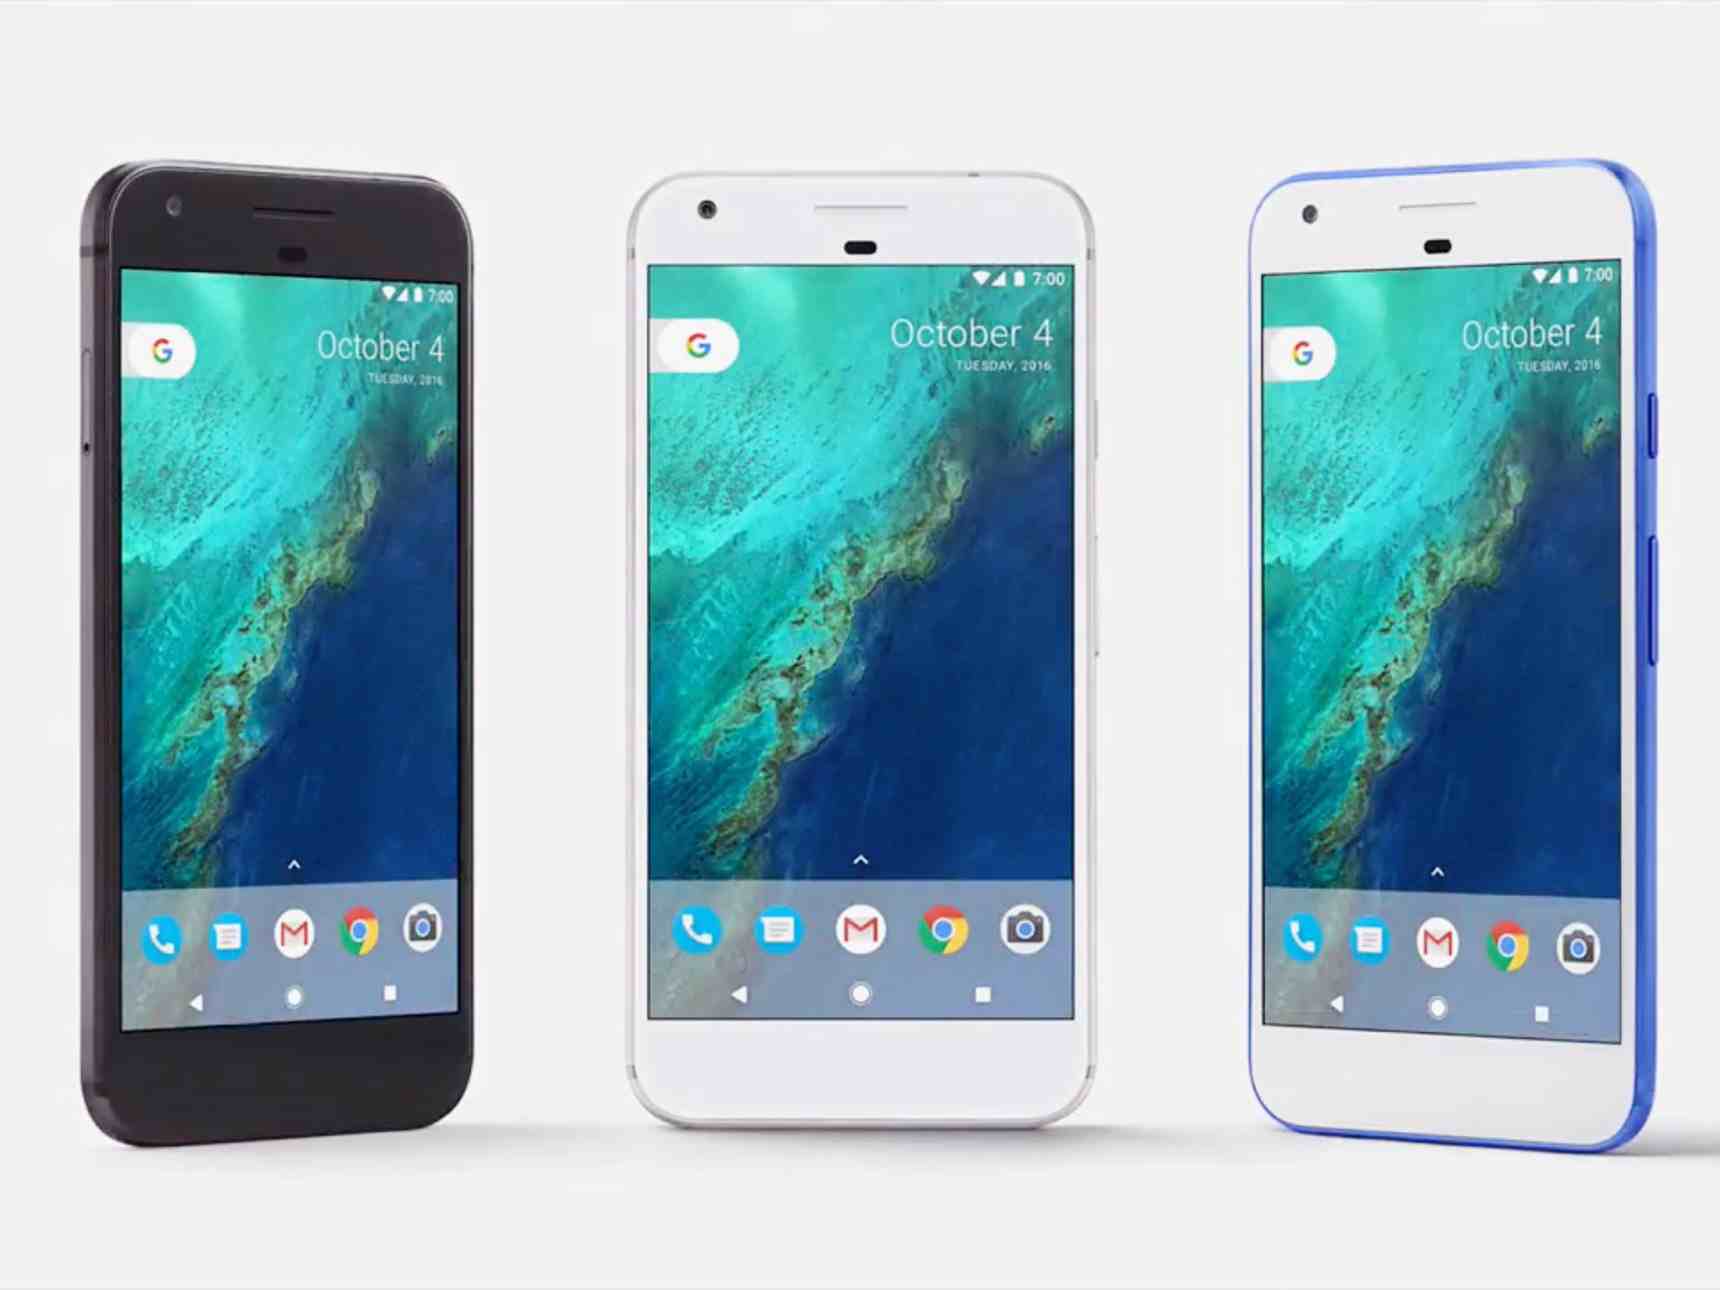 هاتف "جوجل بيكسل" الجديد ونظام أندرويد 7.1 به مشاكل في الاتصال بالسيارات Android 6